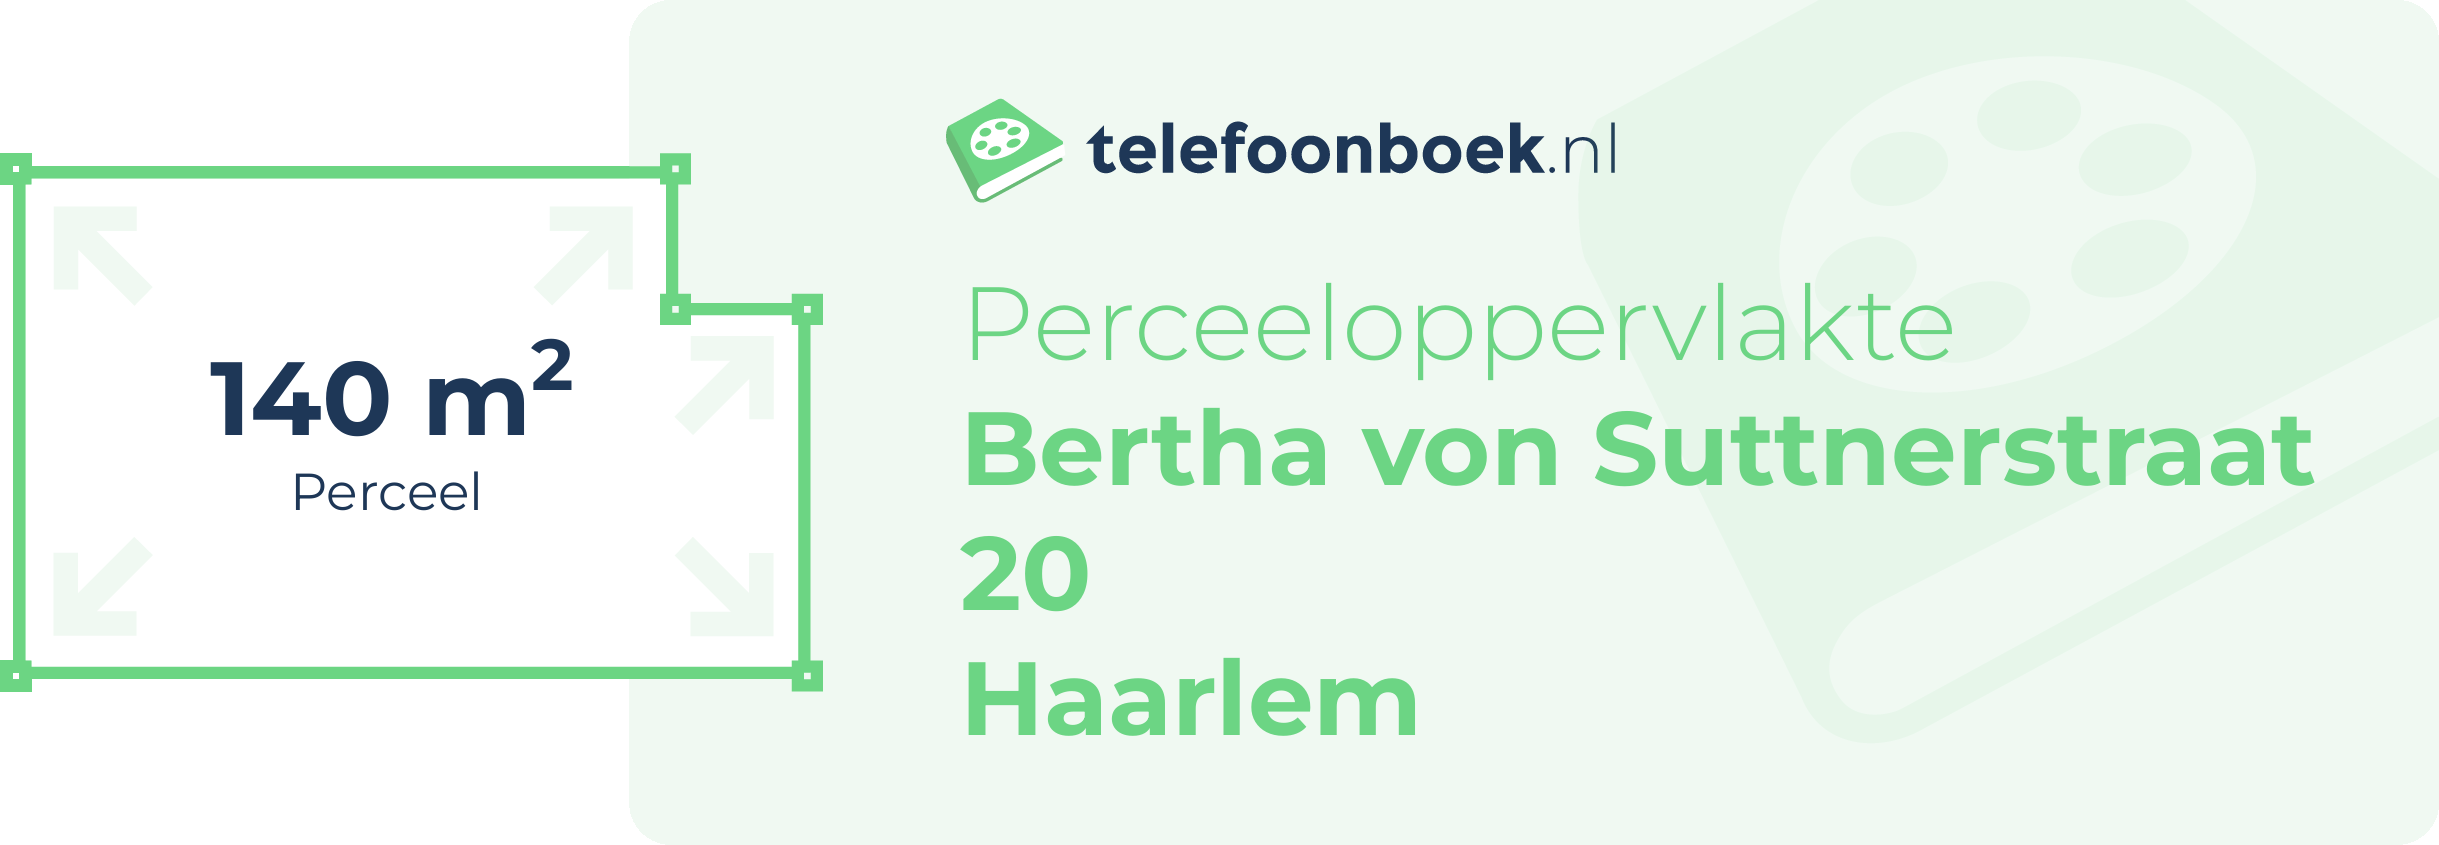 Perceeloppervlakte Bertha Von Suttnerstraat 20 Haarlem